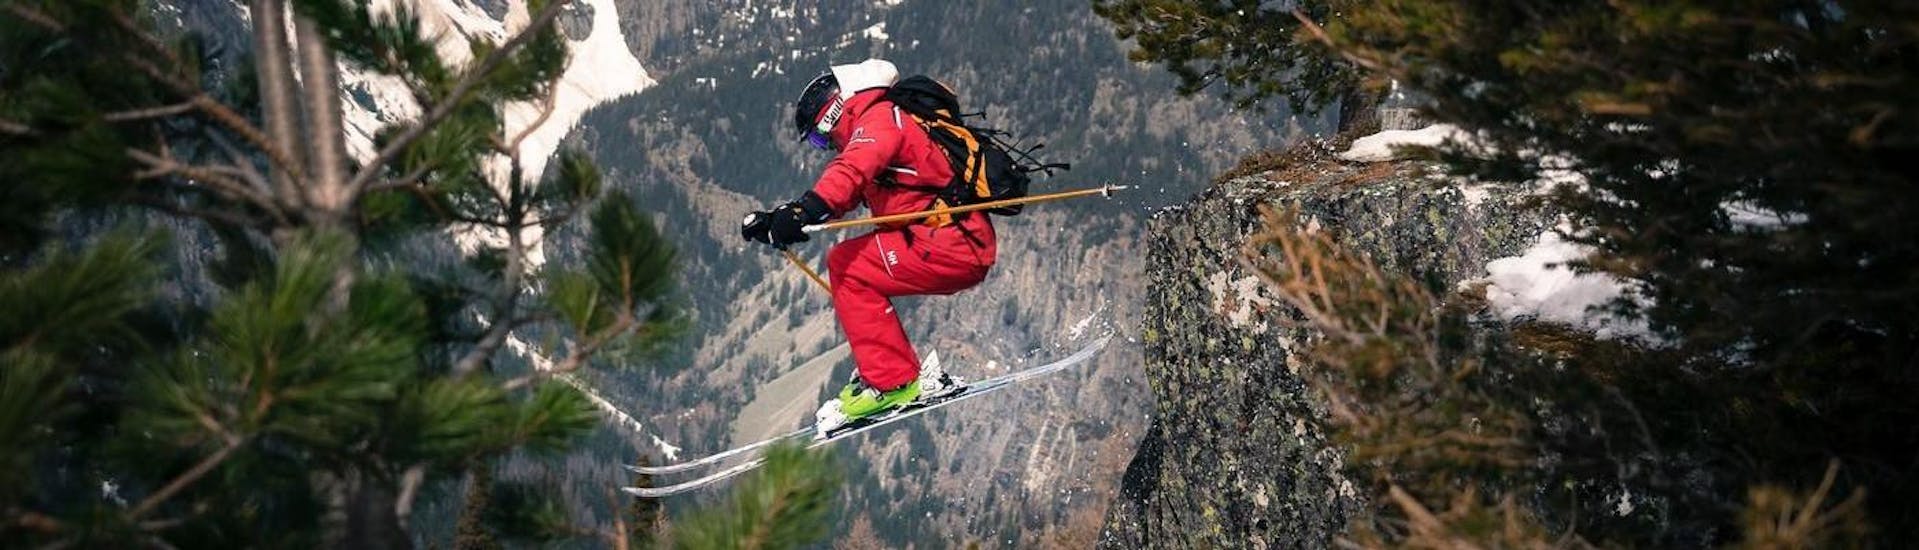 Un skieur hors piste en train de sauter d'un rocher pendant un cours de ski freeride avec l'école de ski ESF Vallorcine dans la station de ski de Chamonix.